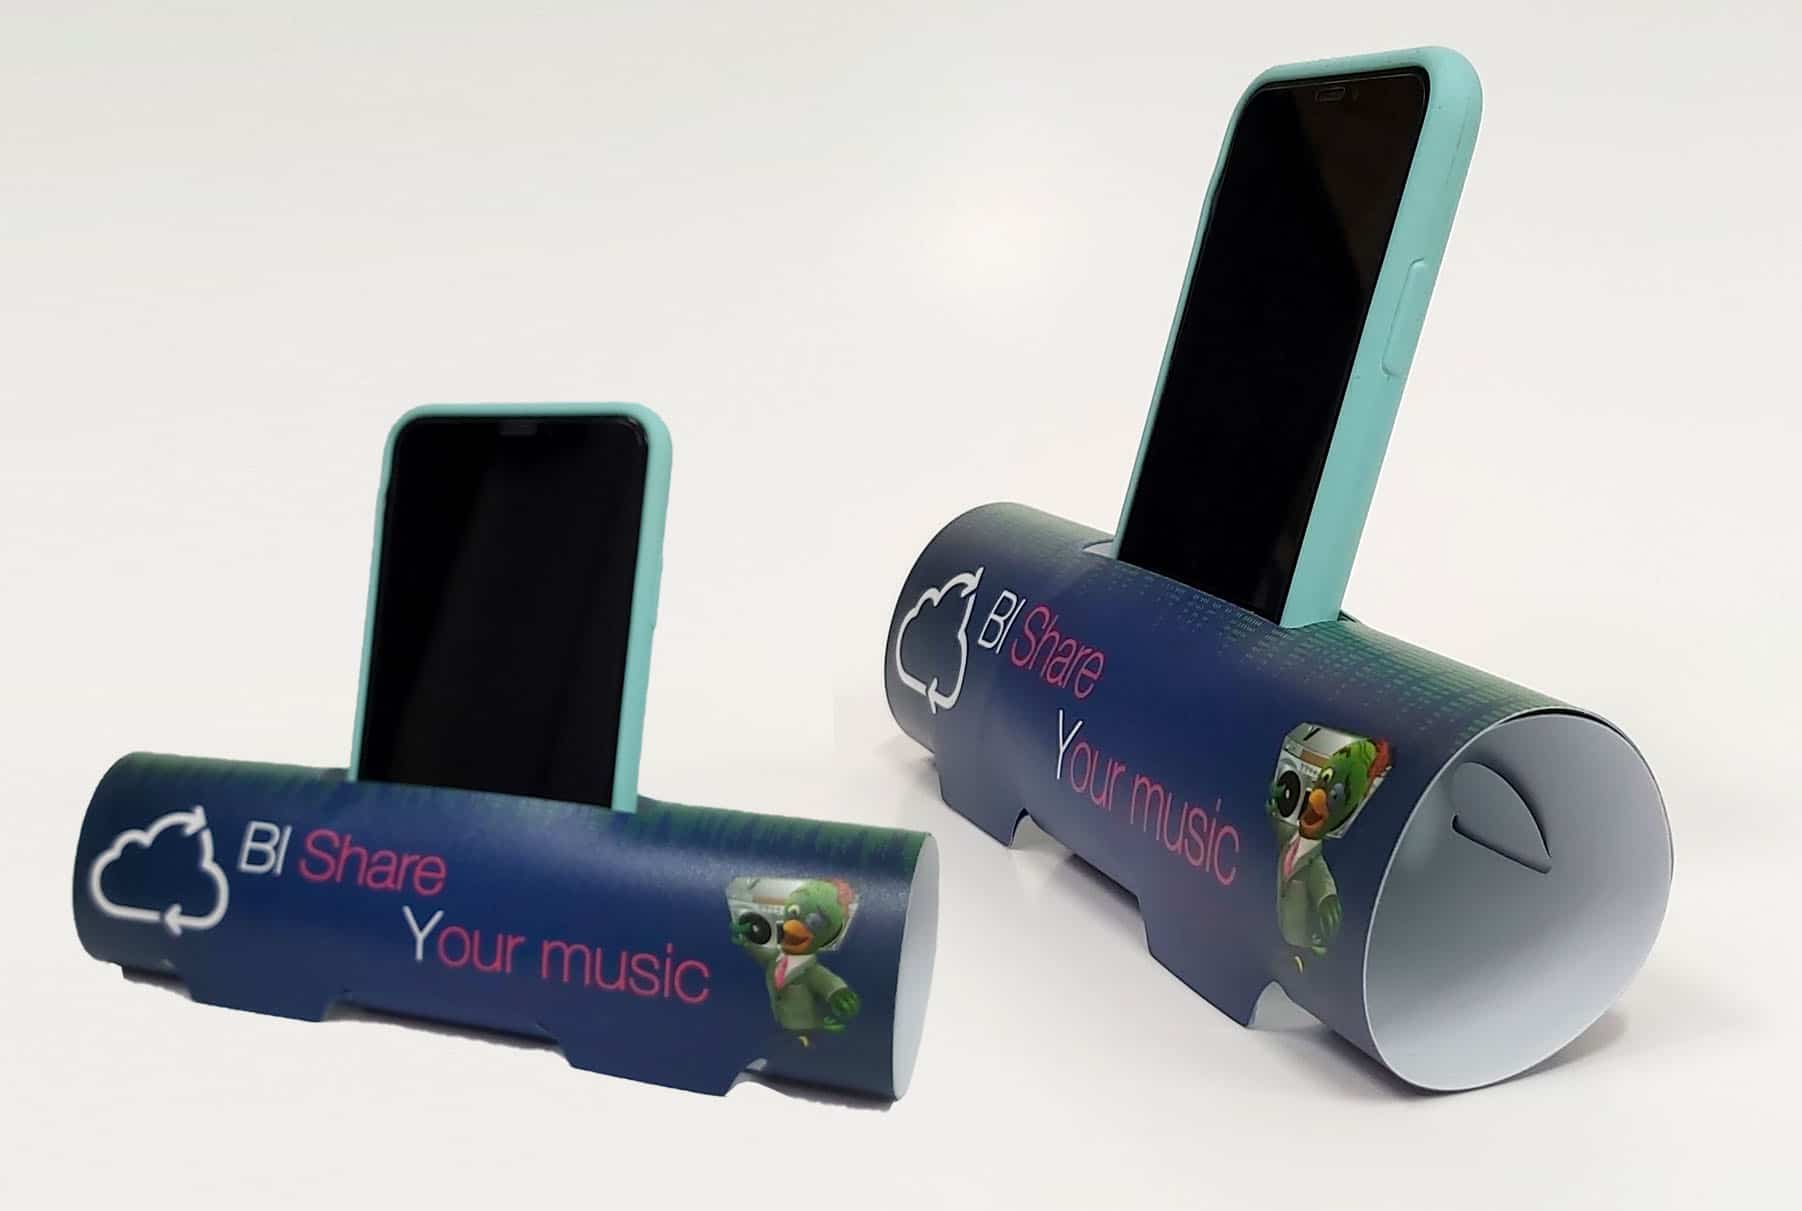 עמדות לטלפון נייד בצבע כחול מפוליפרופילן לחברת בזק עבור קמפיין BI SHARE YOUR MUSIC. ביג ושטנץ מיוחדים לחיתוך וקיפול.